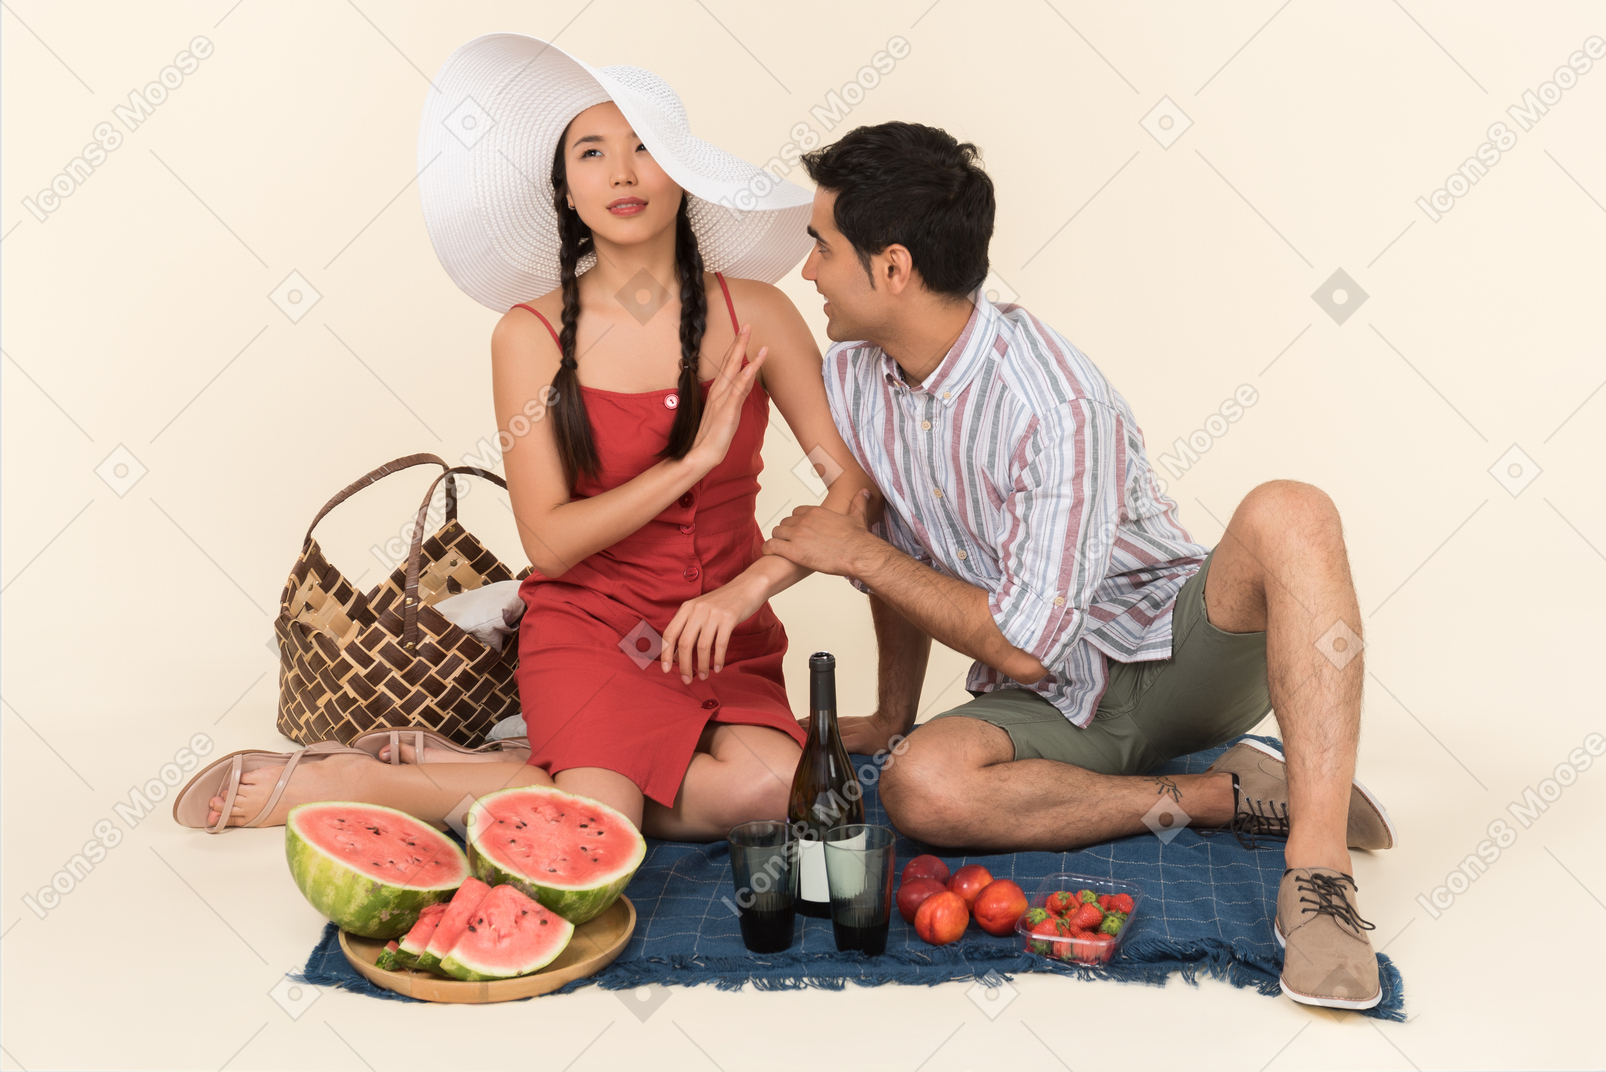 Jeune couple interracial ayant pique-nique et jeune femme semble ne pas aimer quelque chose